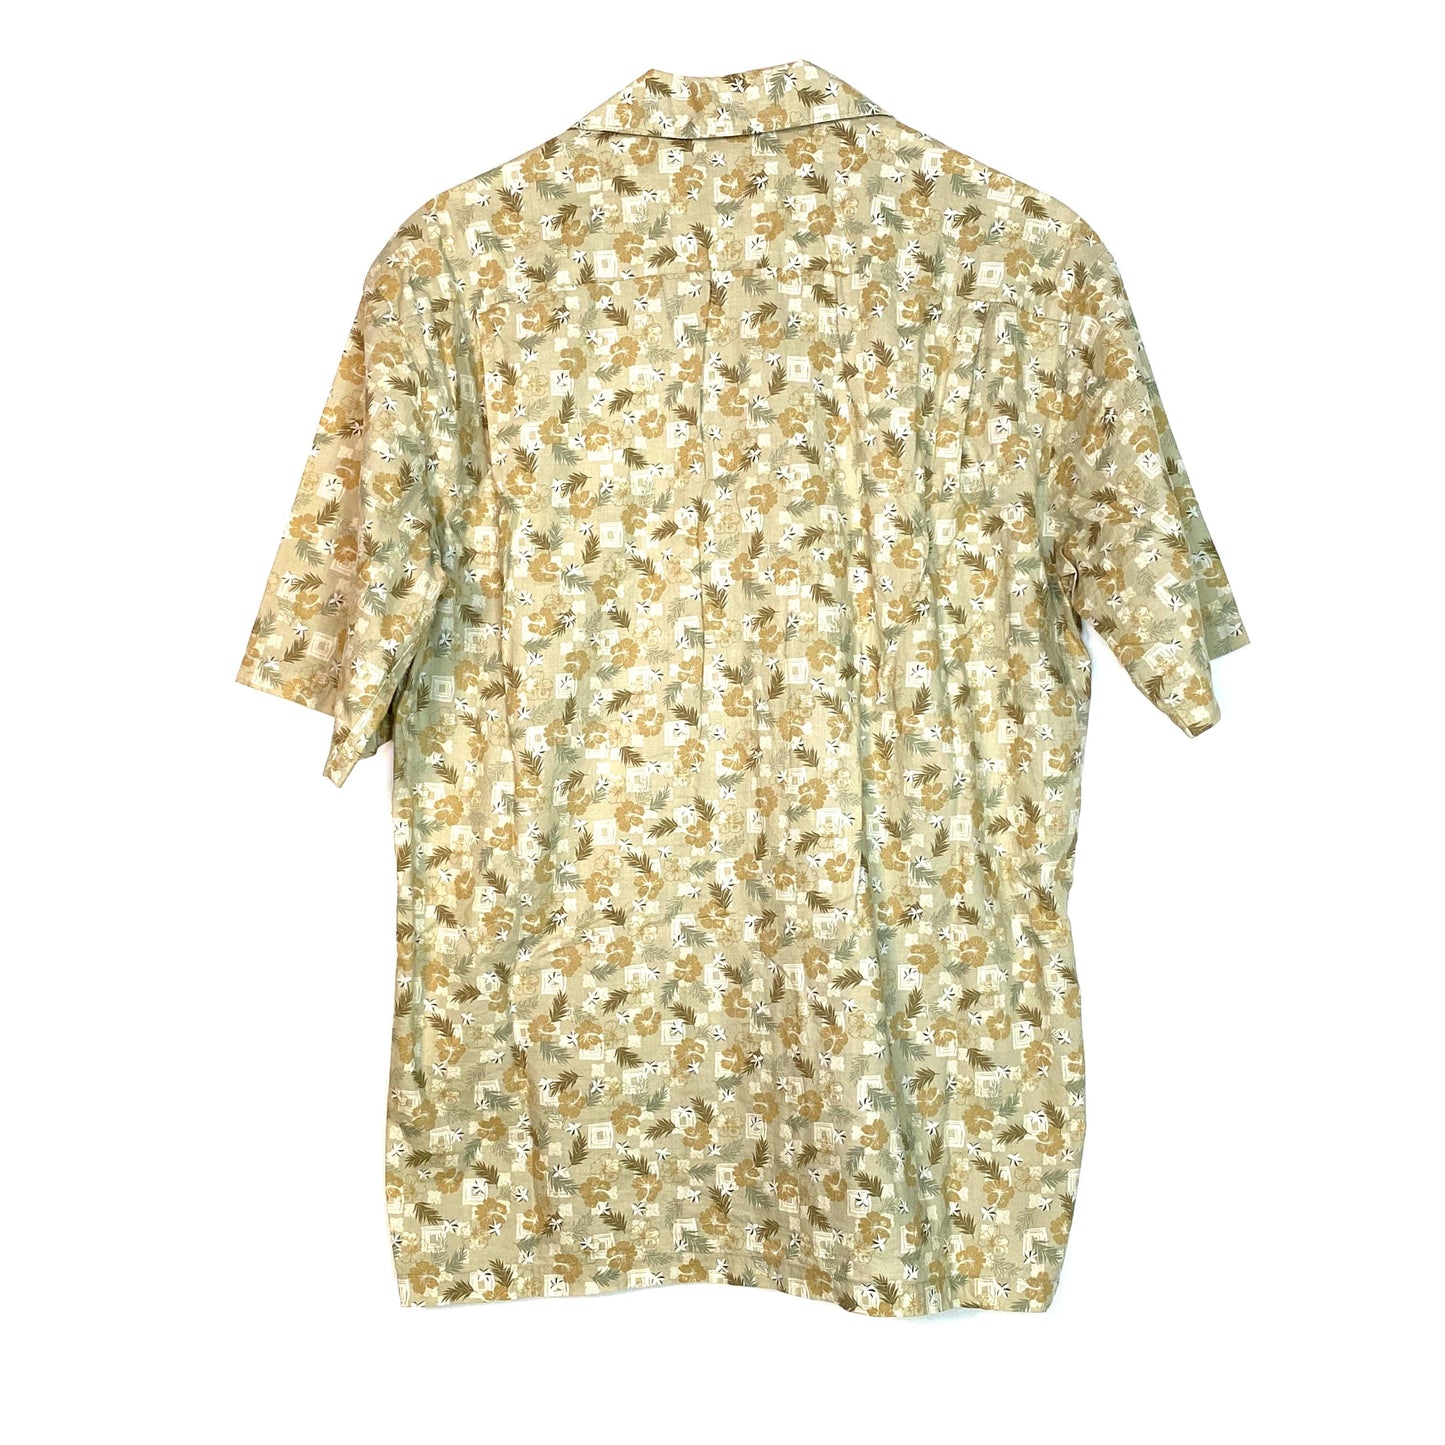 Vibrant Hilo Hattie Beige Floral Hawaiian Button-Up Shirt S/s - Men's S